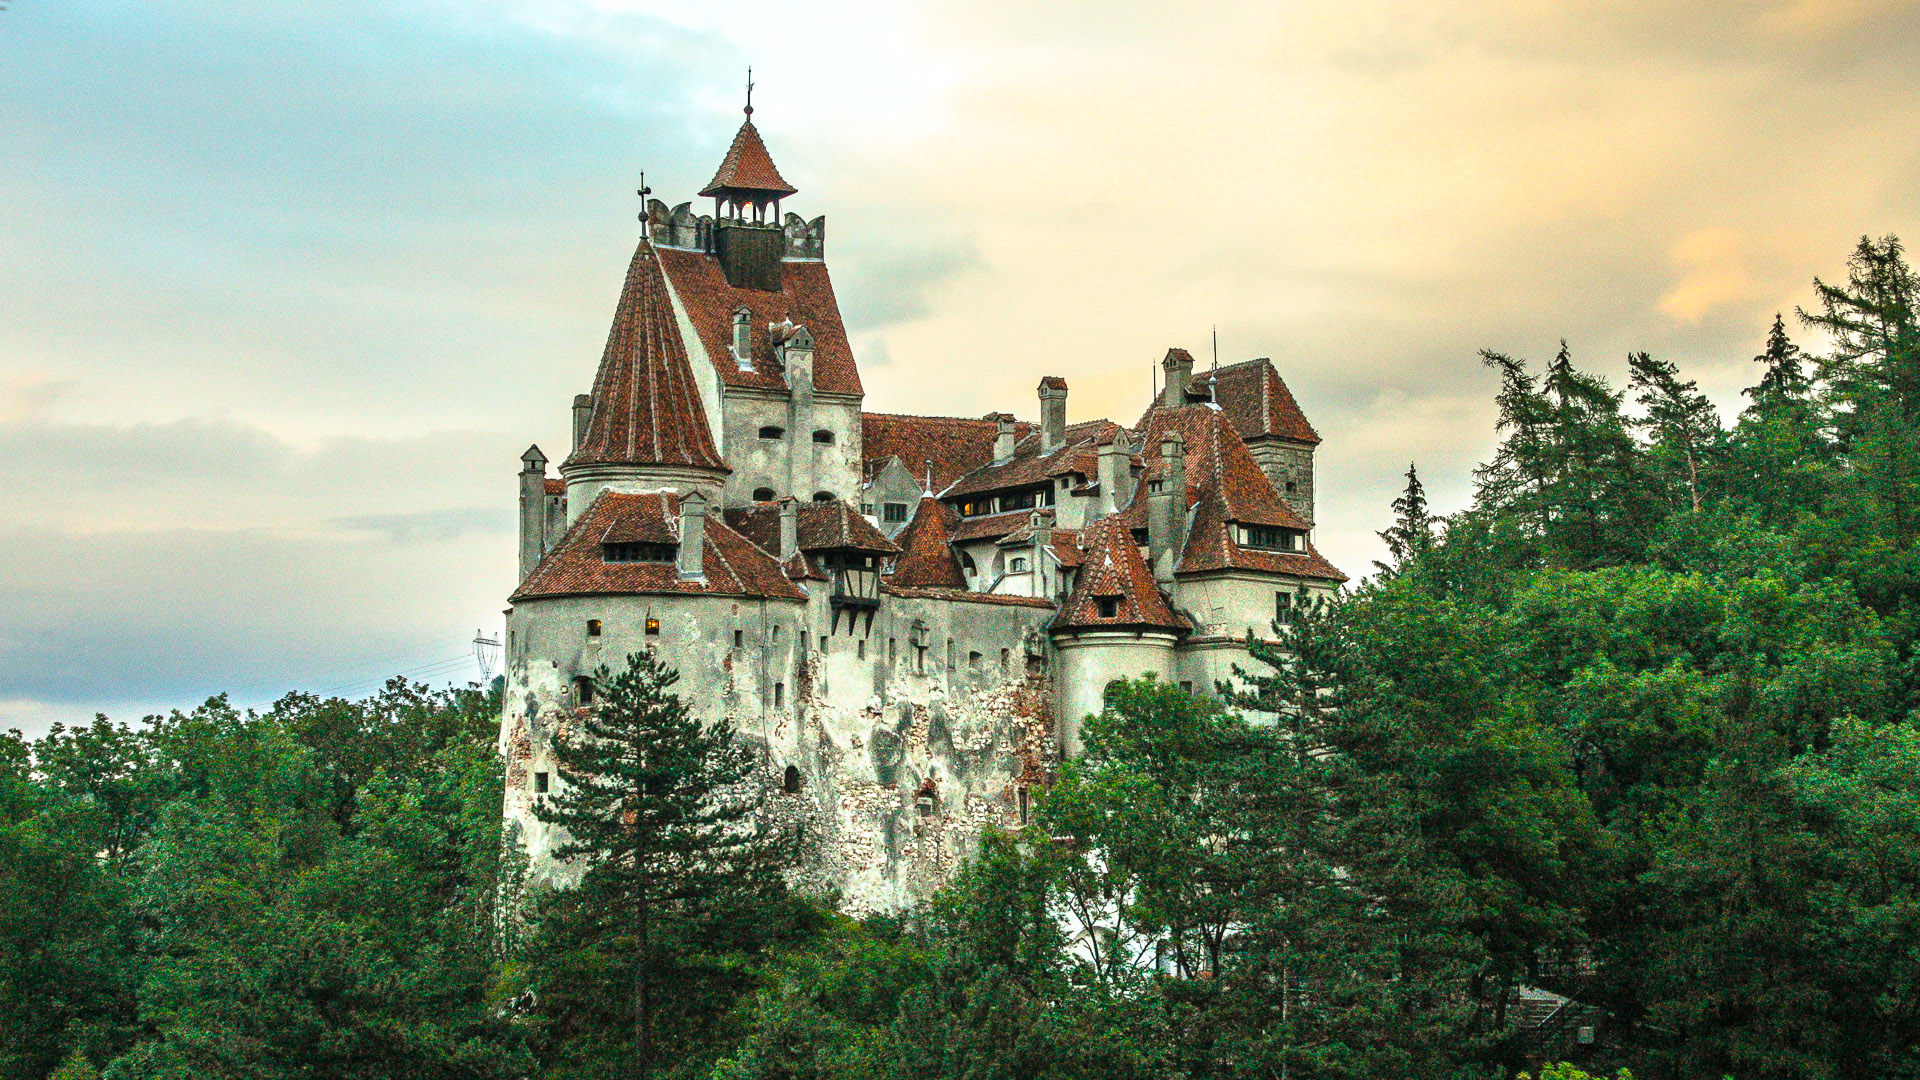 Medieval Transylvania Tour - 2 Days - RomaniaTourStore1920 x 1080